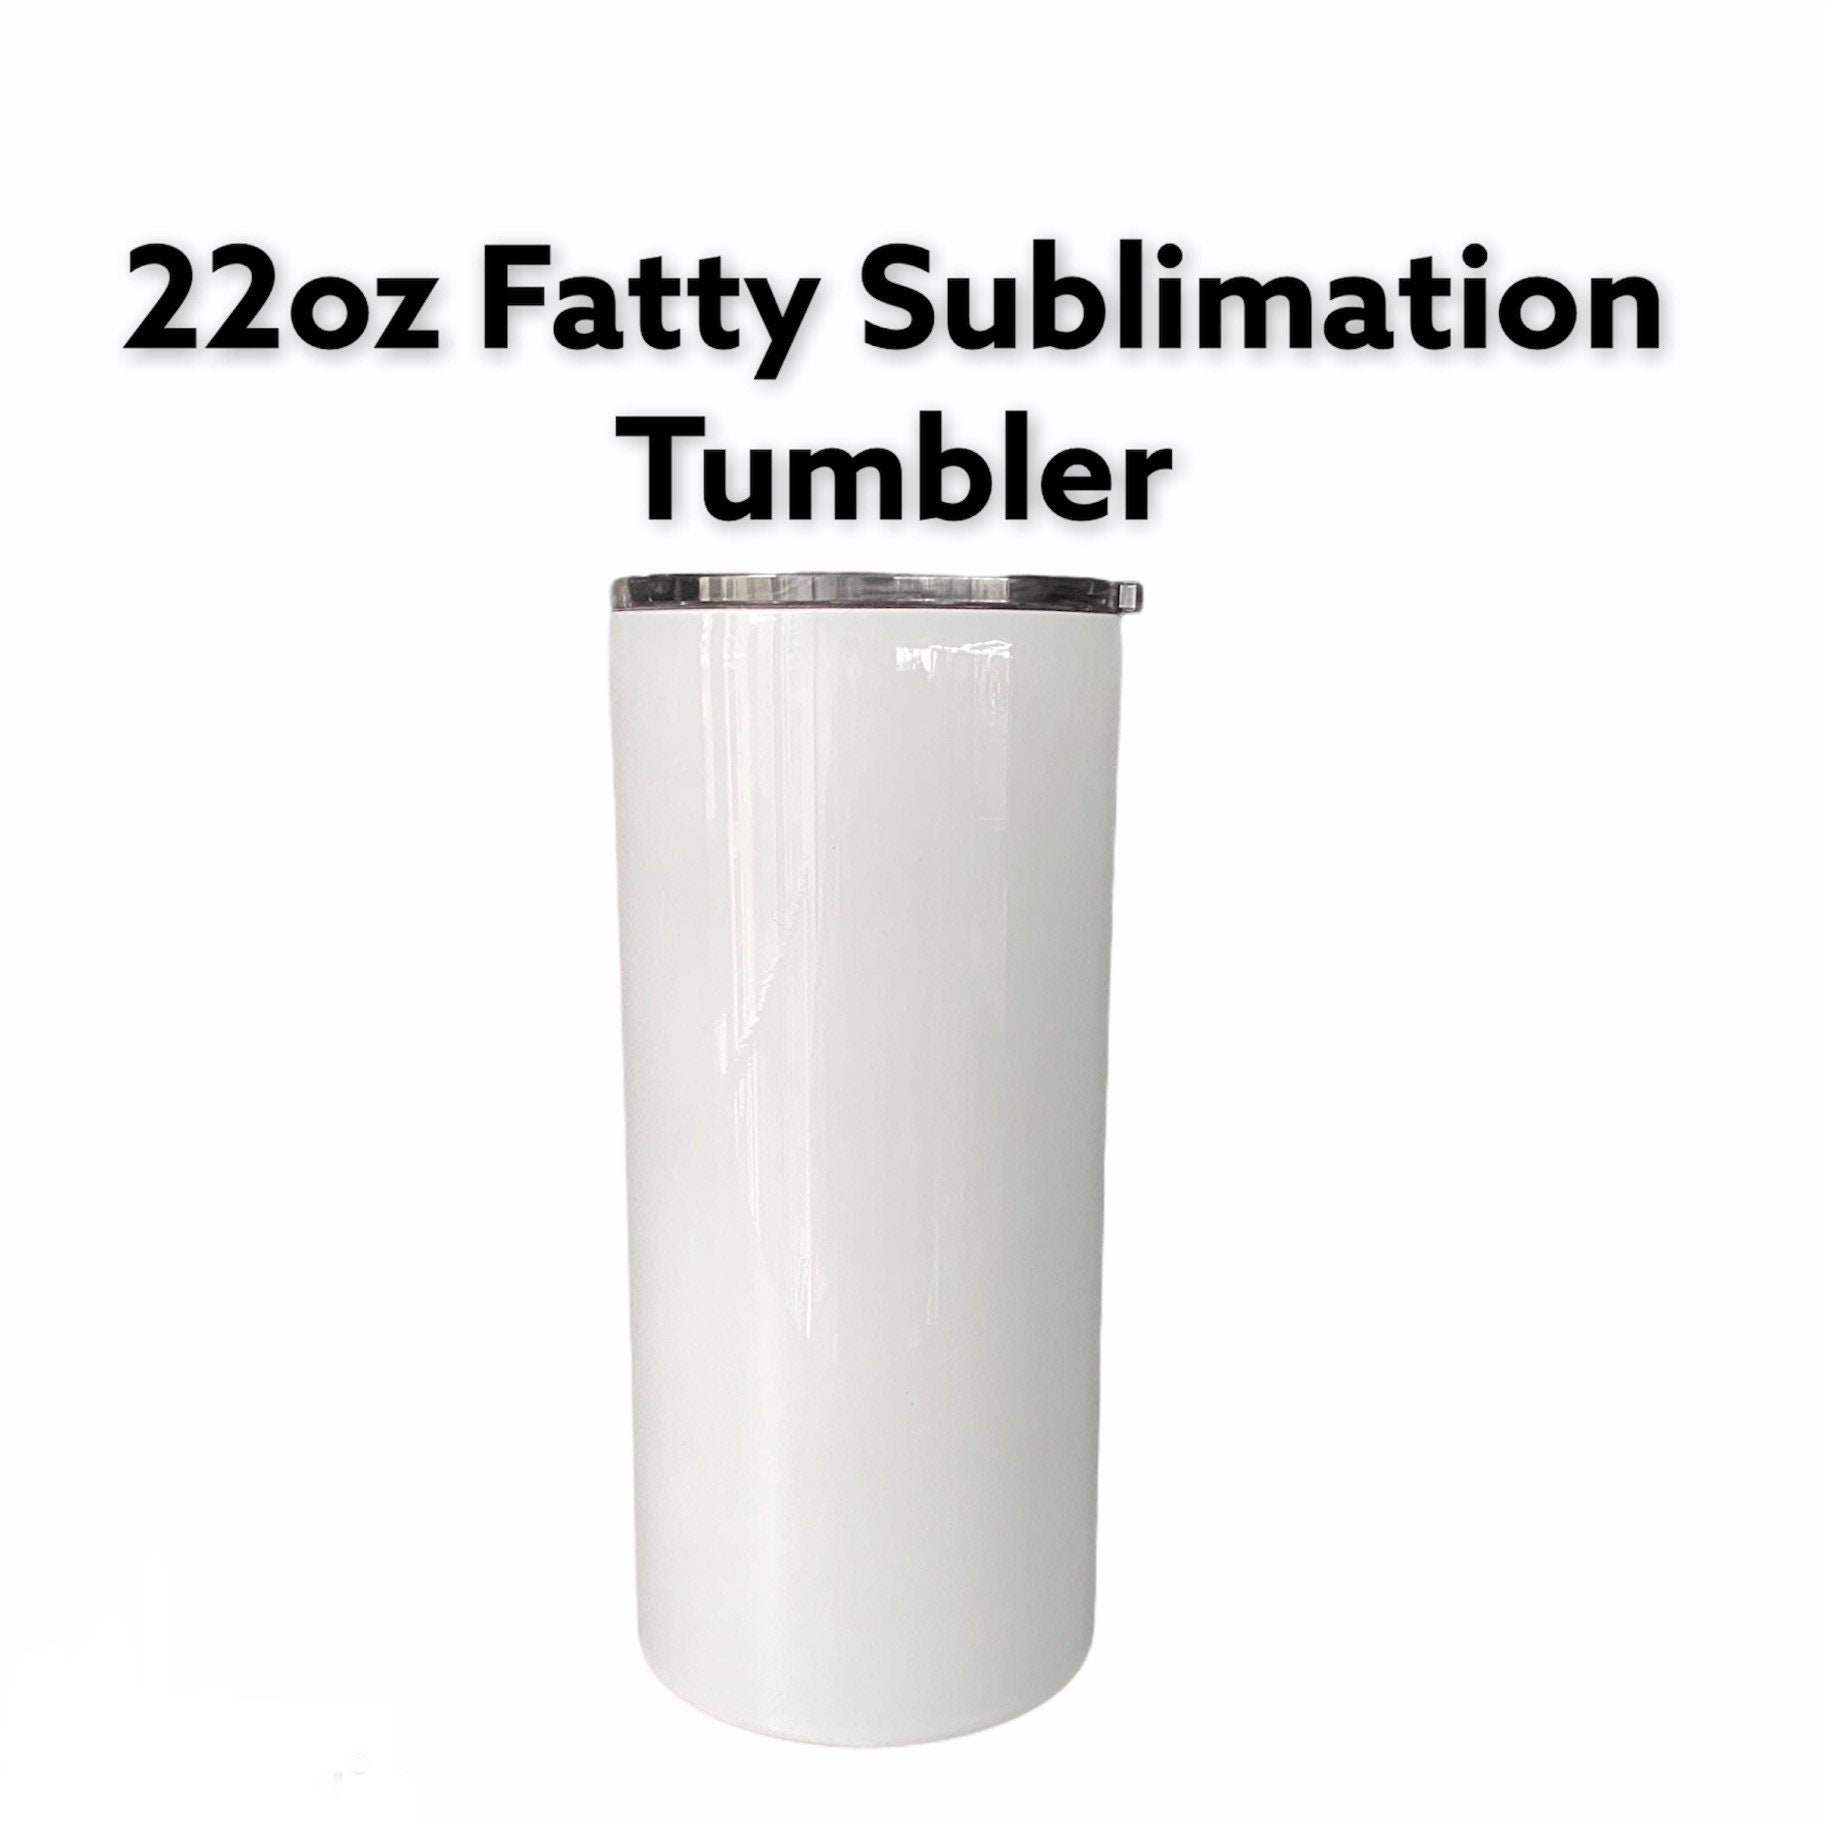 22oz HOGG Fatty epoxy tumbler – Tbcactusdesigns